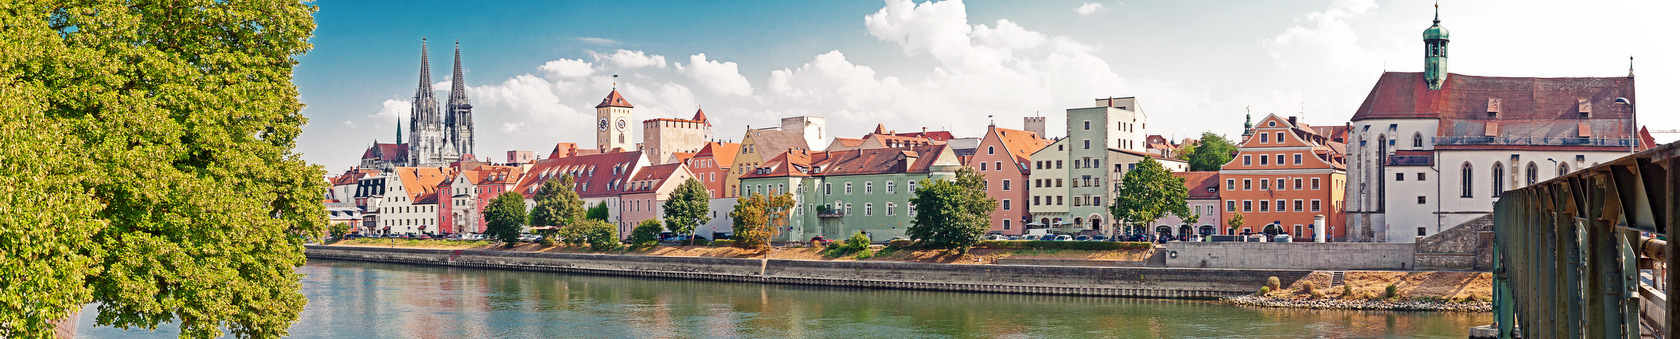 Regensburg - interesujące miasto do poznawania języka niemieckiego